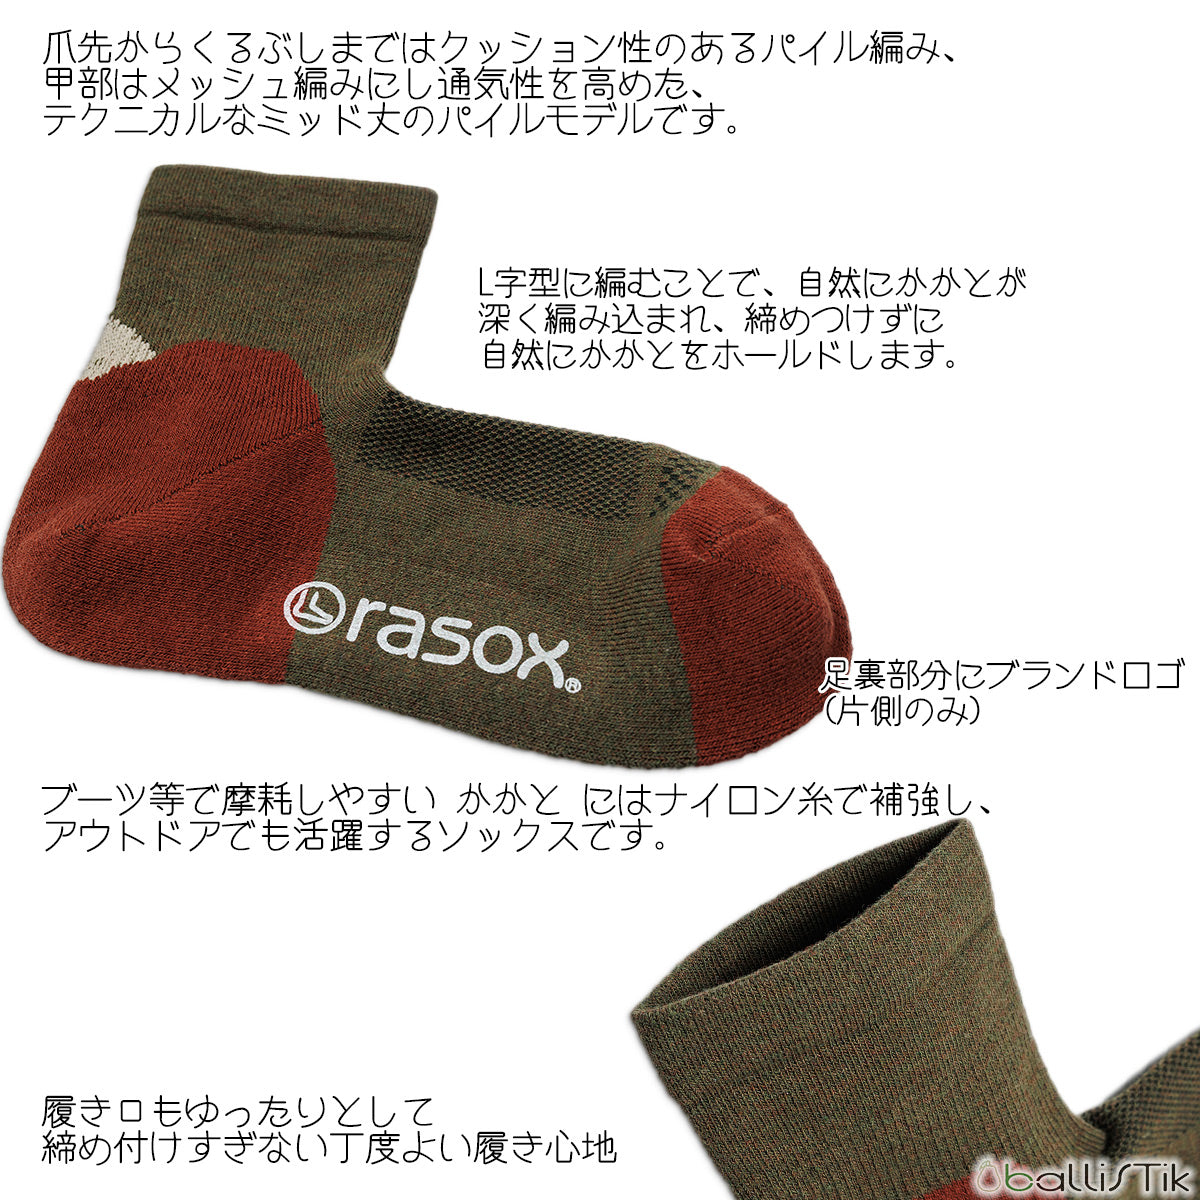 rasox/ラソックス/靴下/スニーカーソックス/ショートソックス/ロークルーソックス/ブロックパイルミッド/詳細